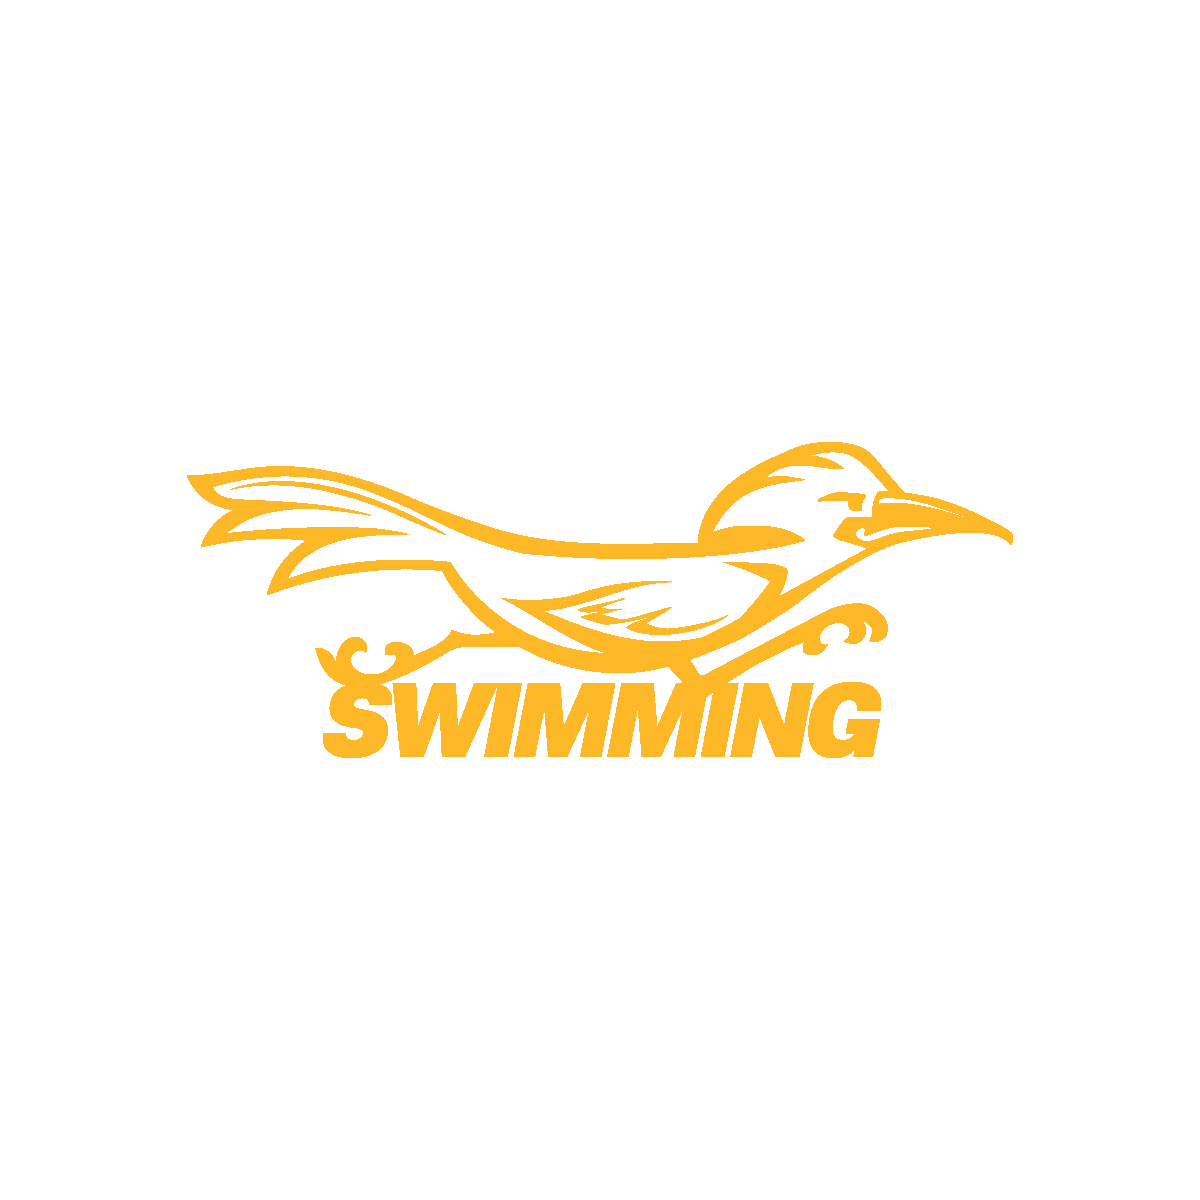 Swimming mascot - yellow